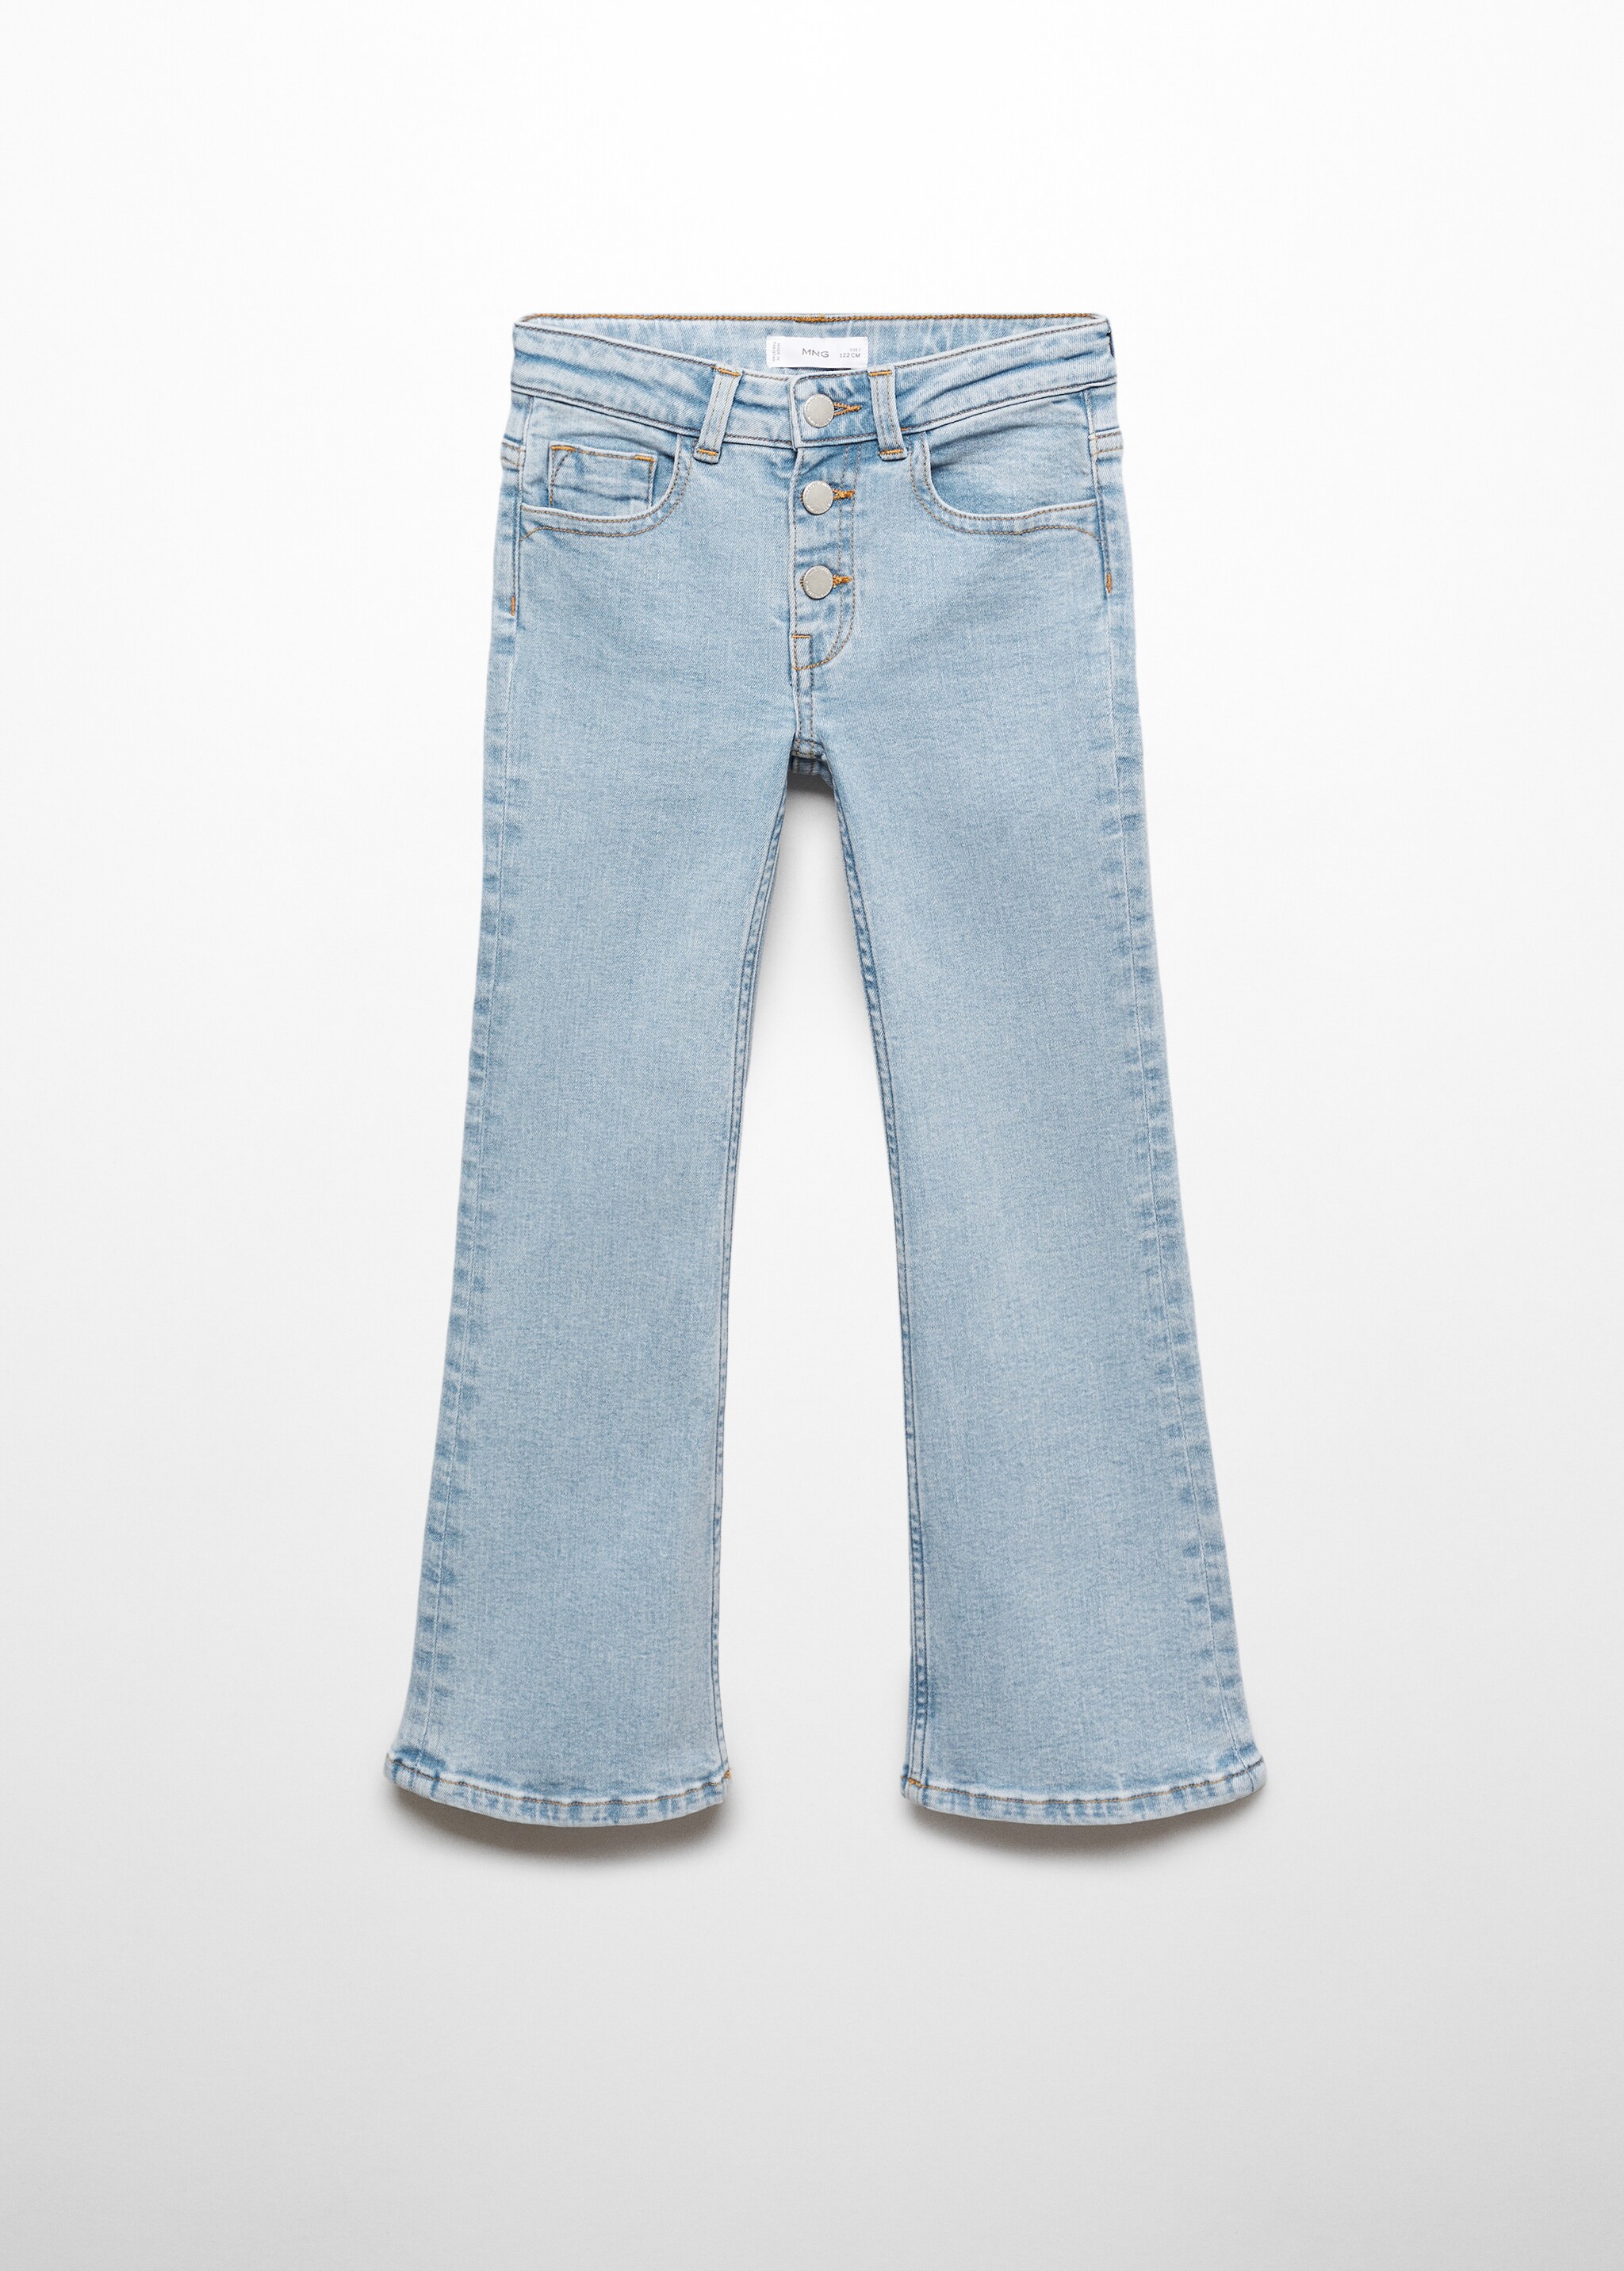 Jeans flare botones - Artículo sin modelo